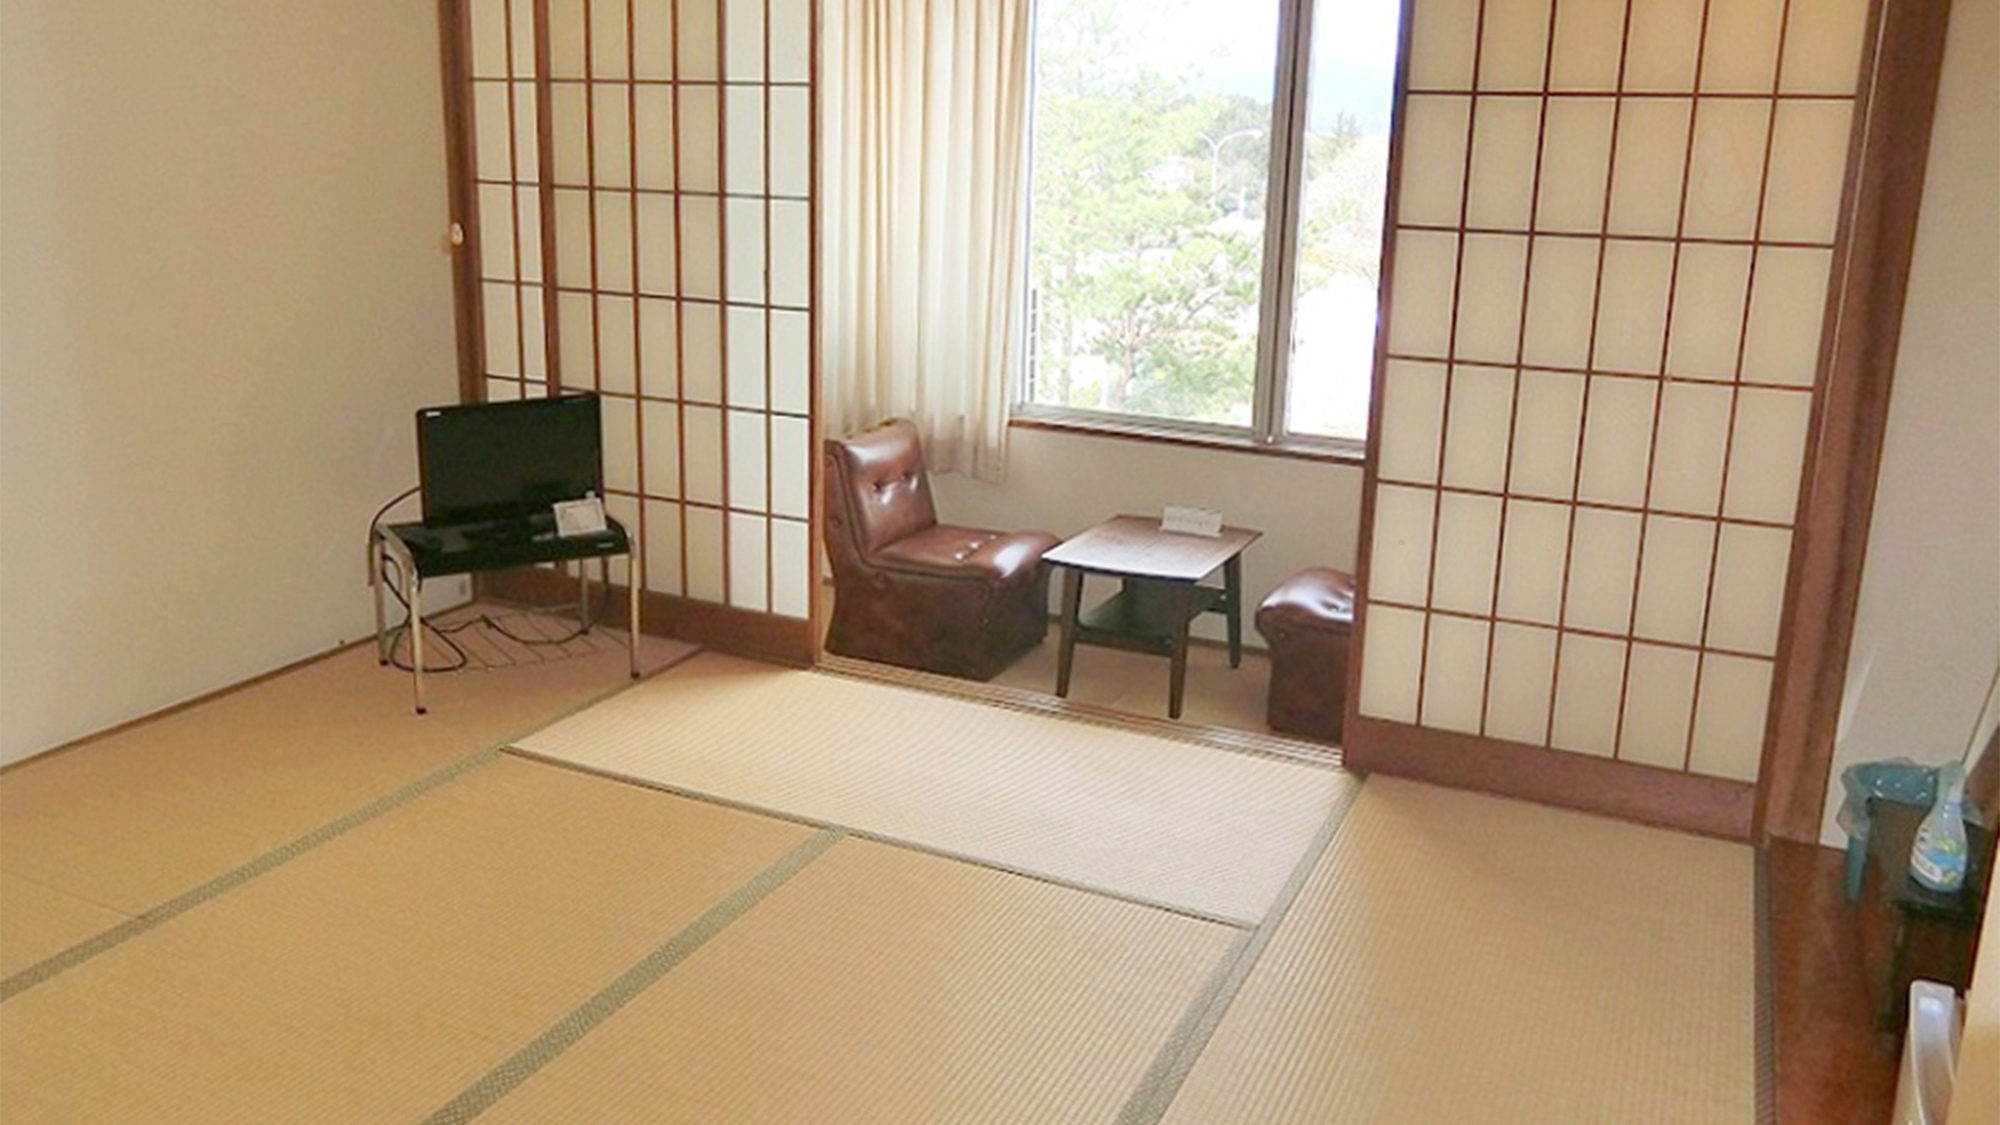 ・＜客室イメージ＞足を伸ばしてゴロゴロできる畳のお部屋です